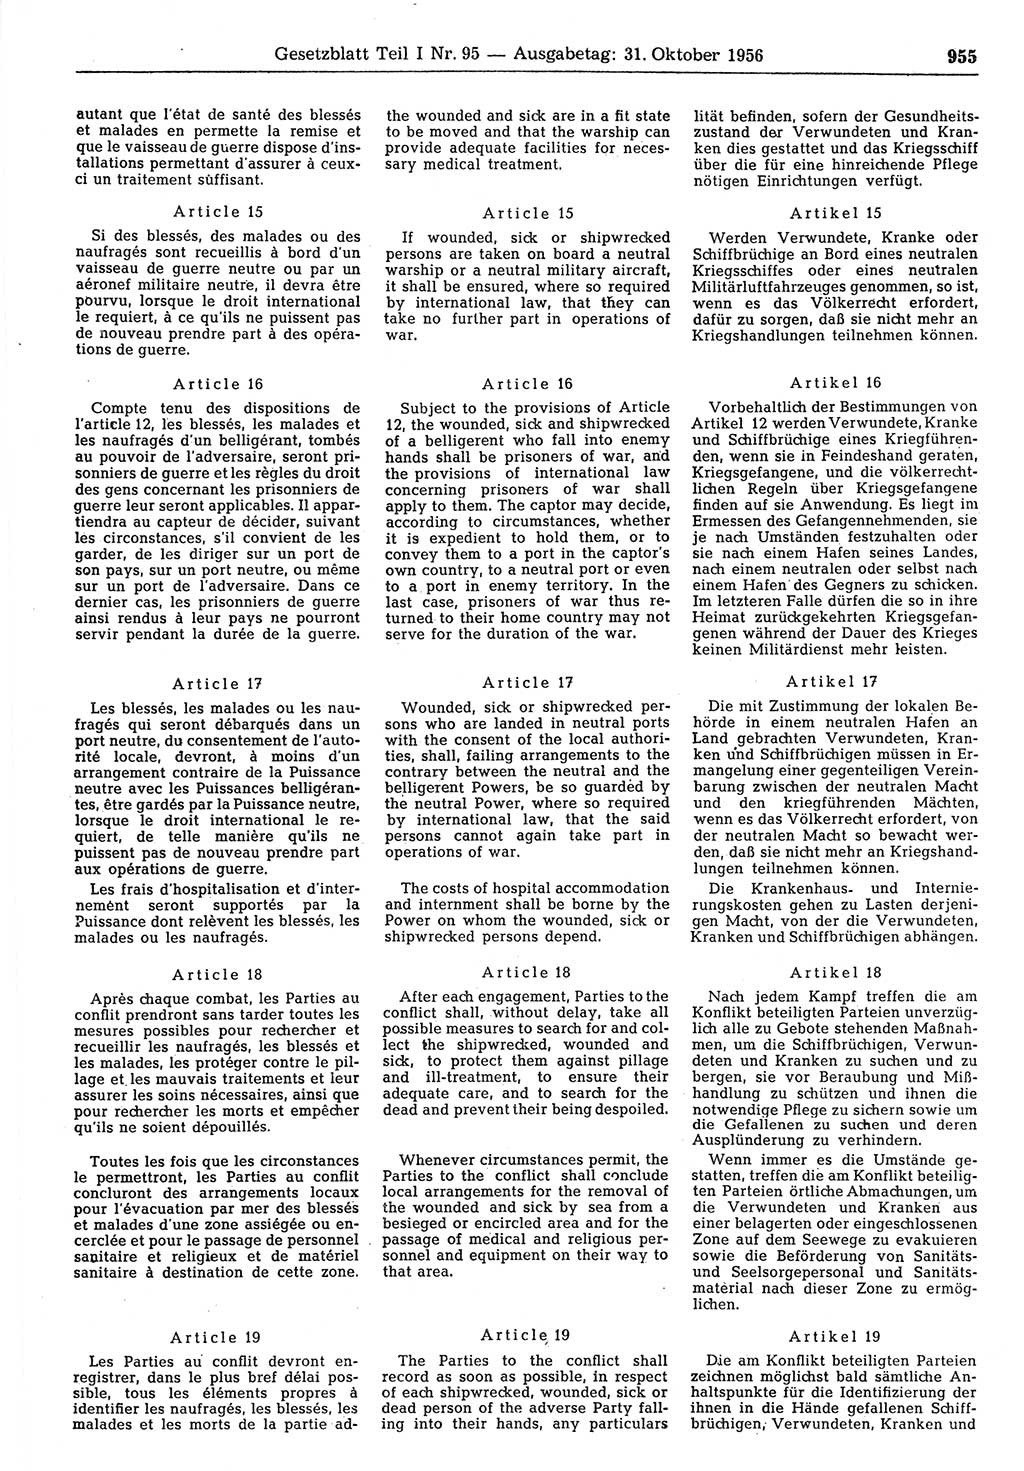 Gesetzblatt (GBl.) der Deutschen Demokratischen Republik (DDR) Teil Ⅰ 1956, Seite 955 (GBl. DDR Ⅰ 1956, S. 955)